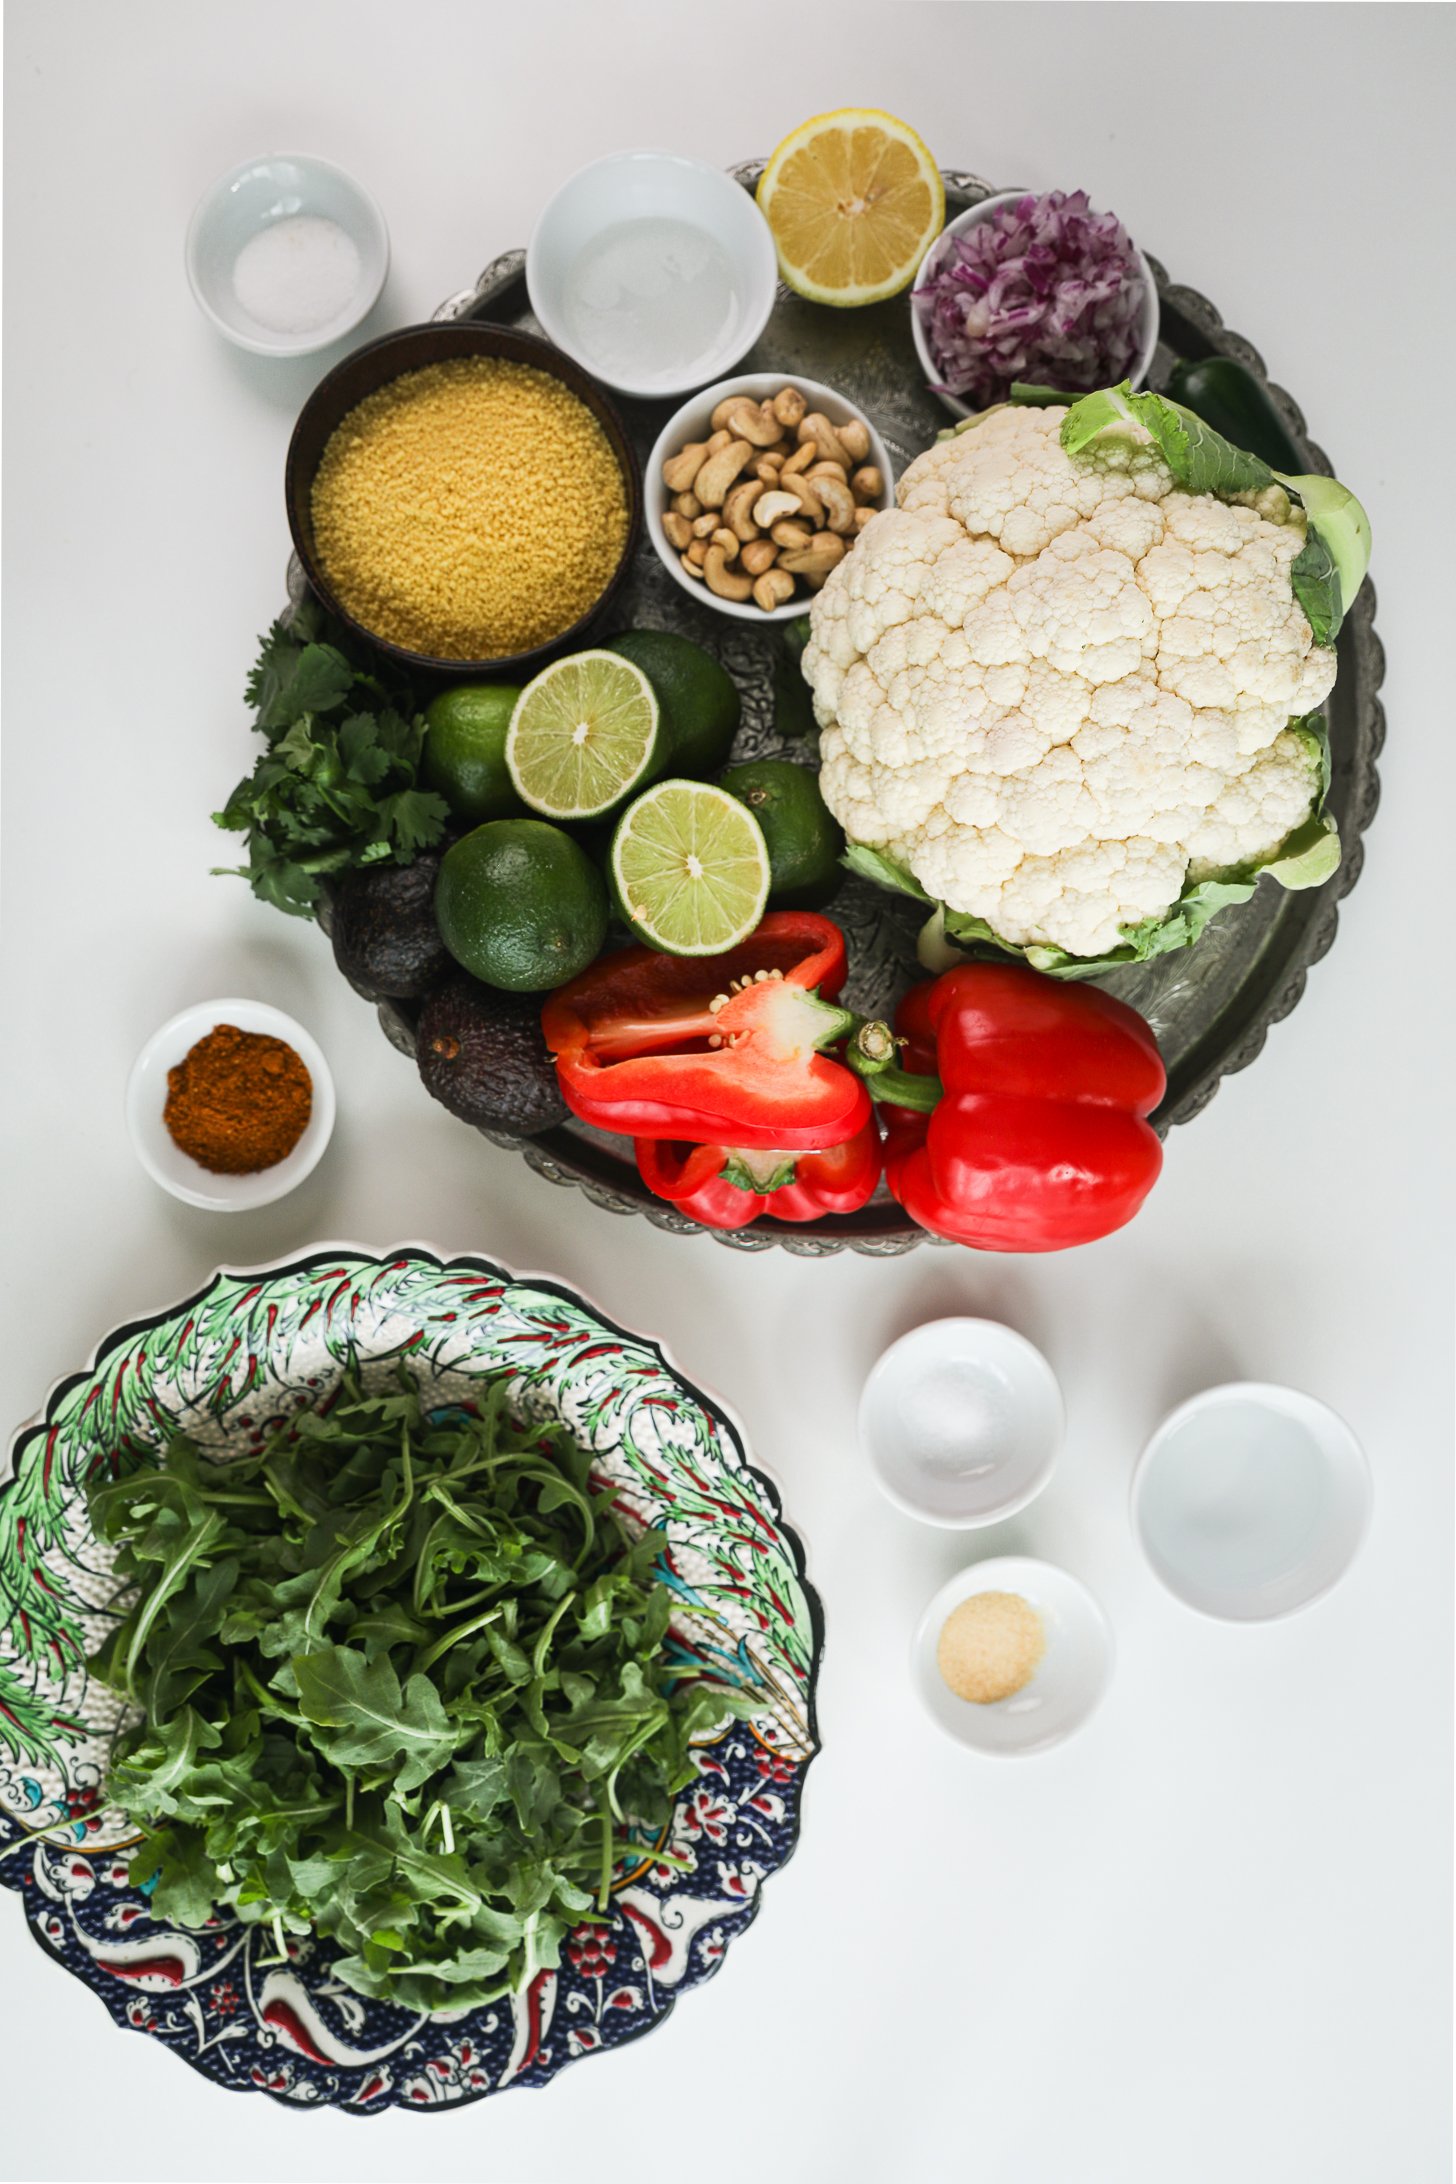 تصویر بالای صفحه نمایش مواد غذایی شامل سبزیجات، آروگولا، ادویه جات، بادام هندی و کوسکوس.